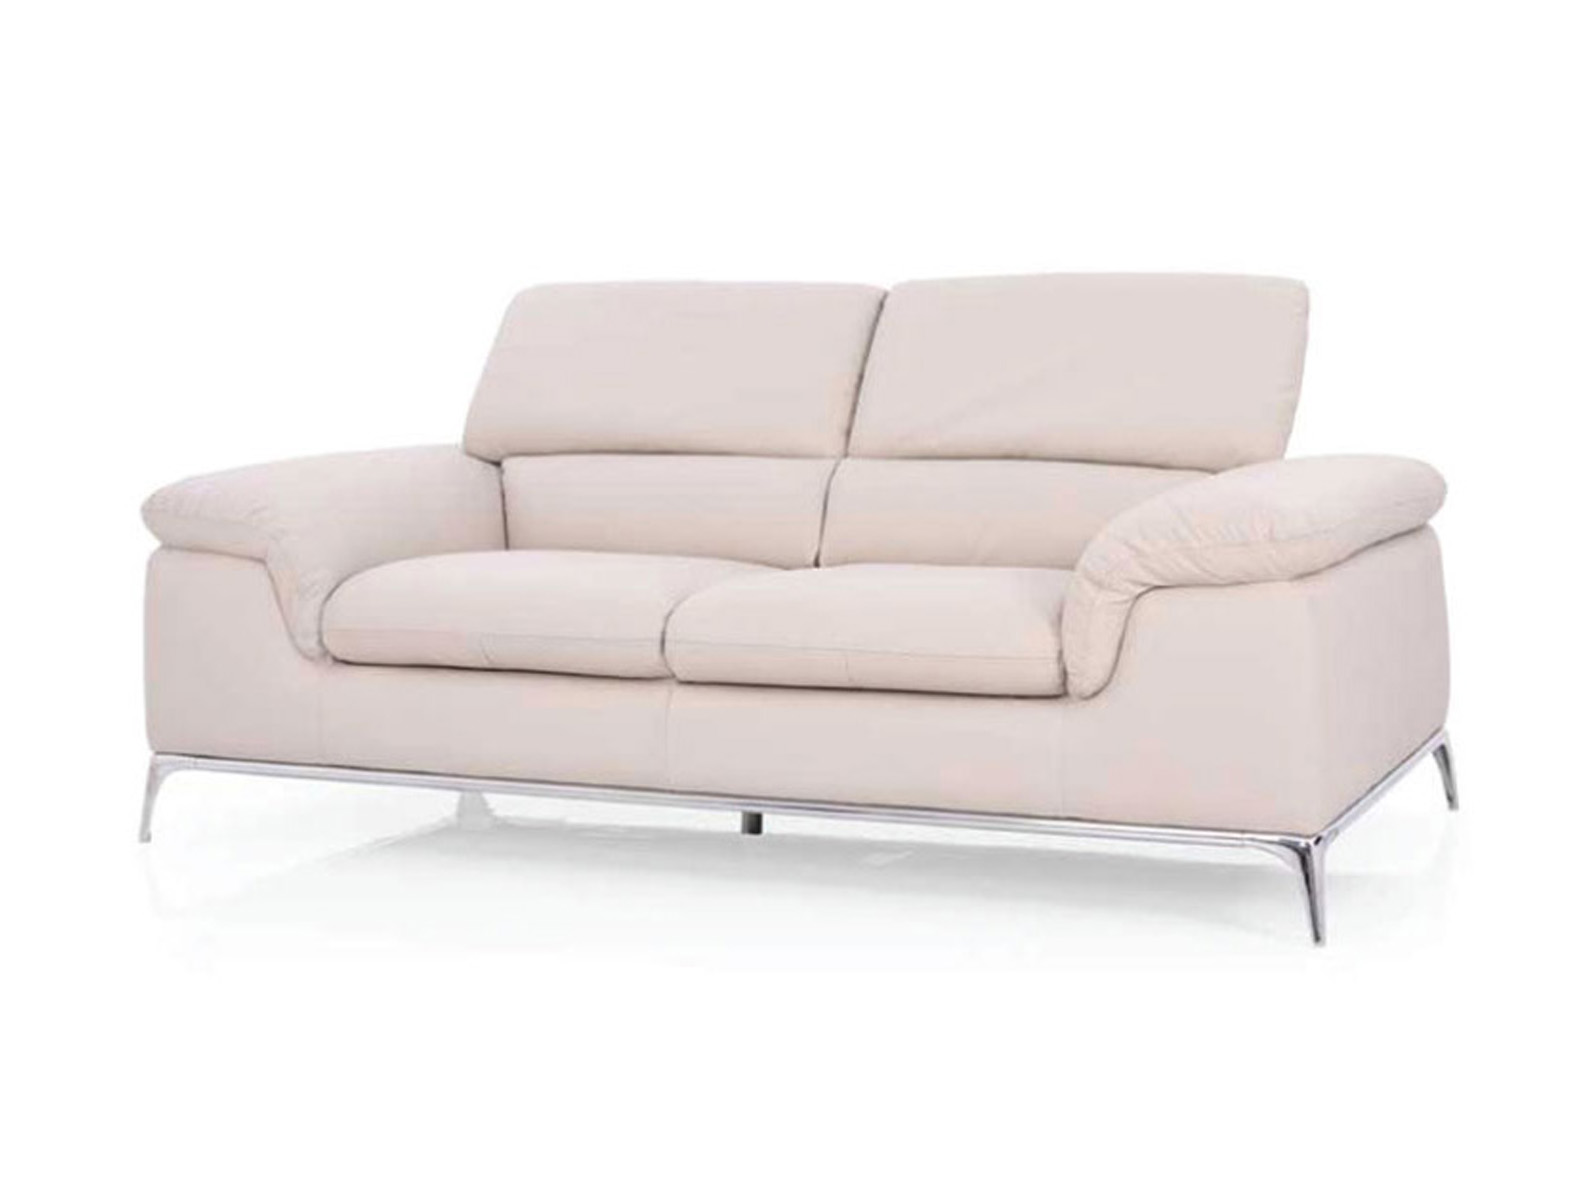 romania sofa